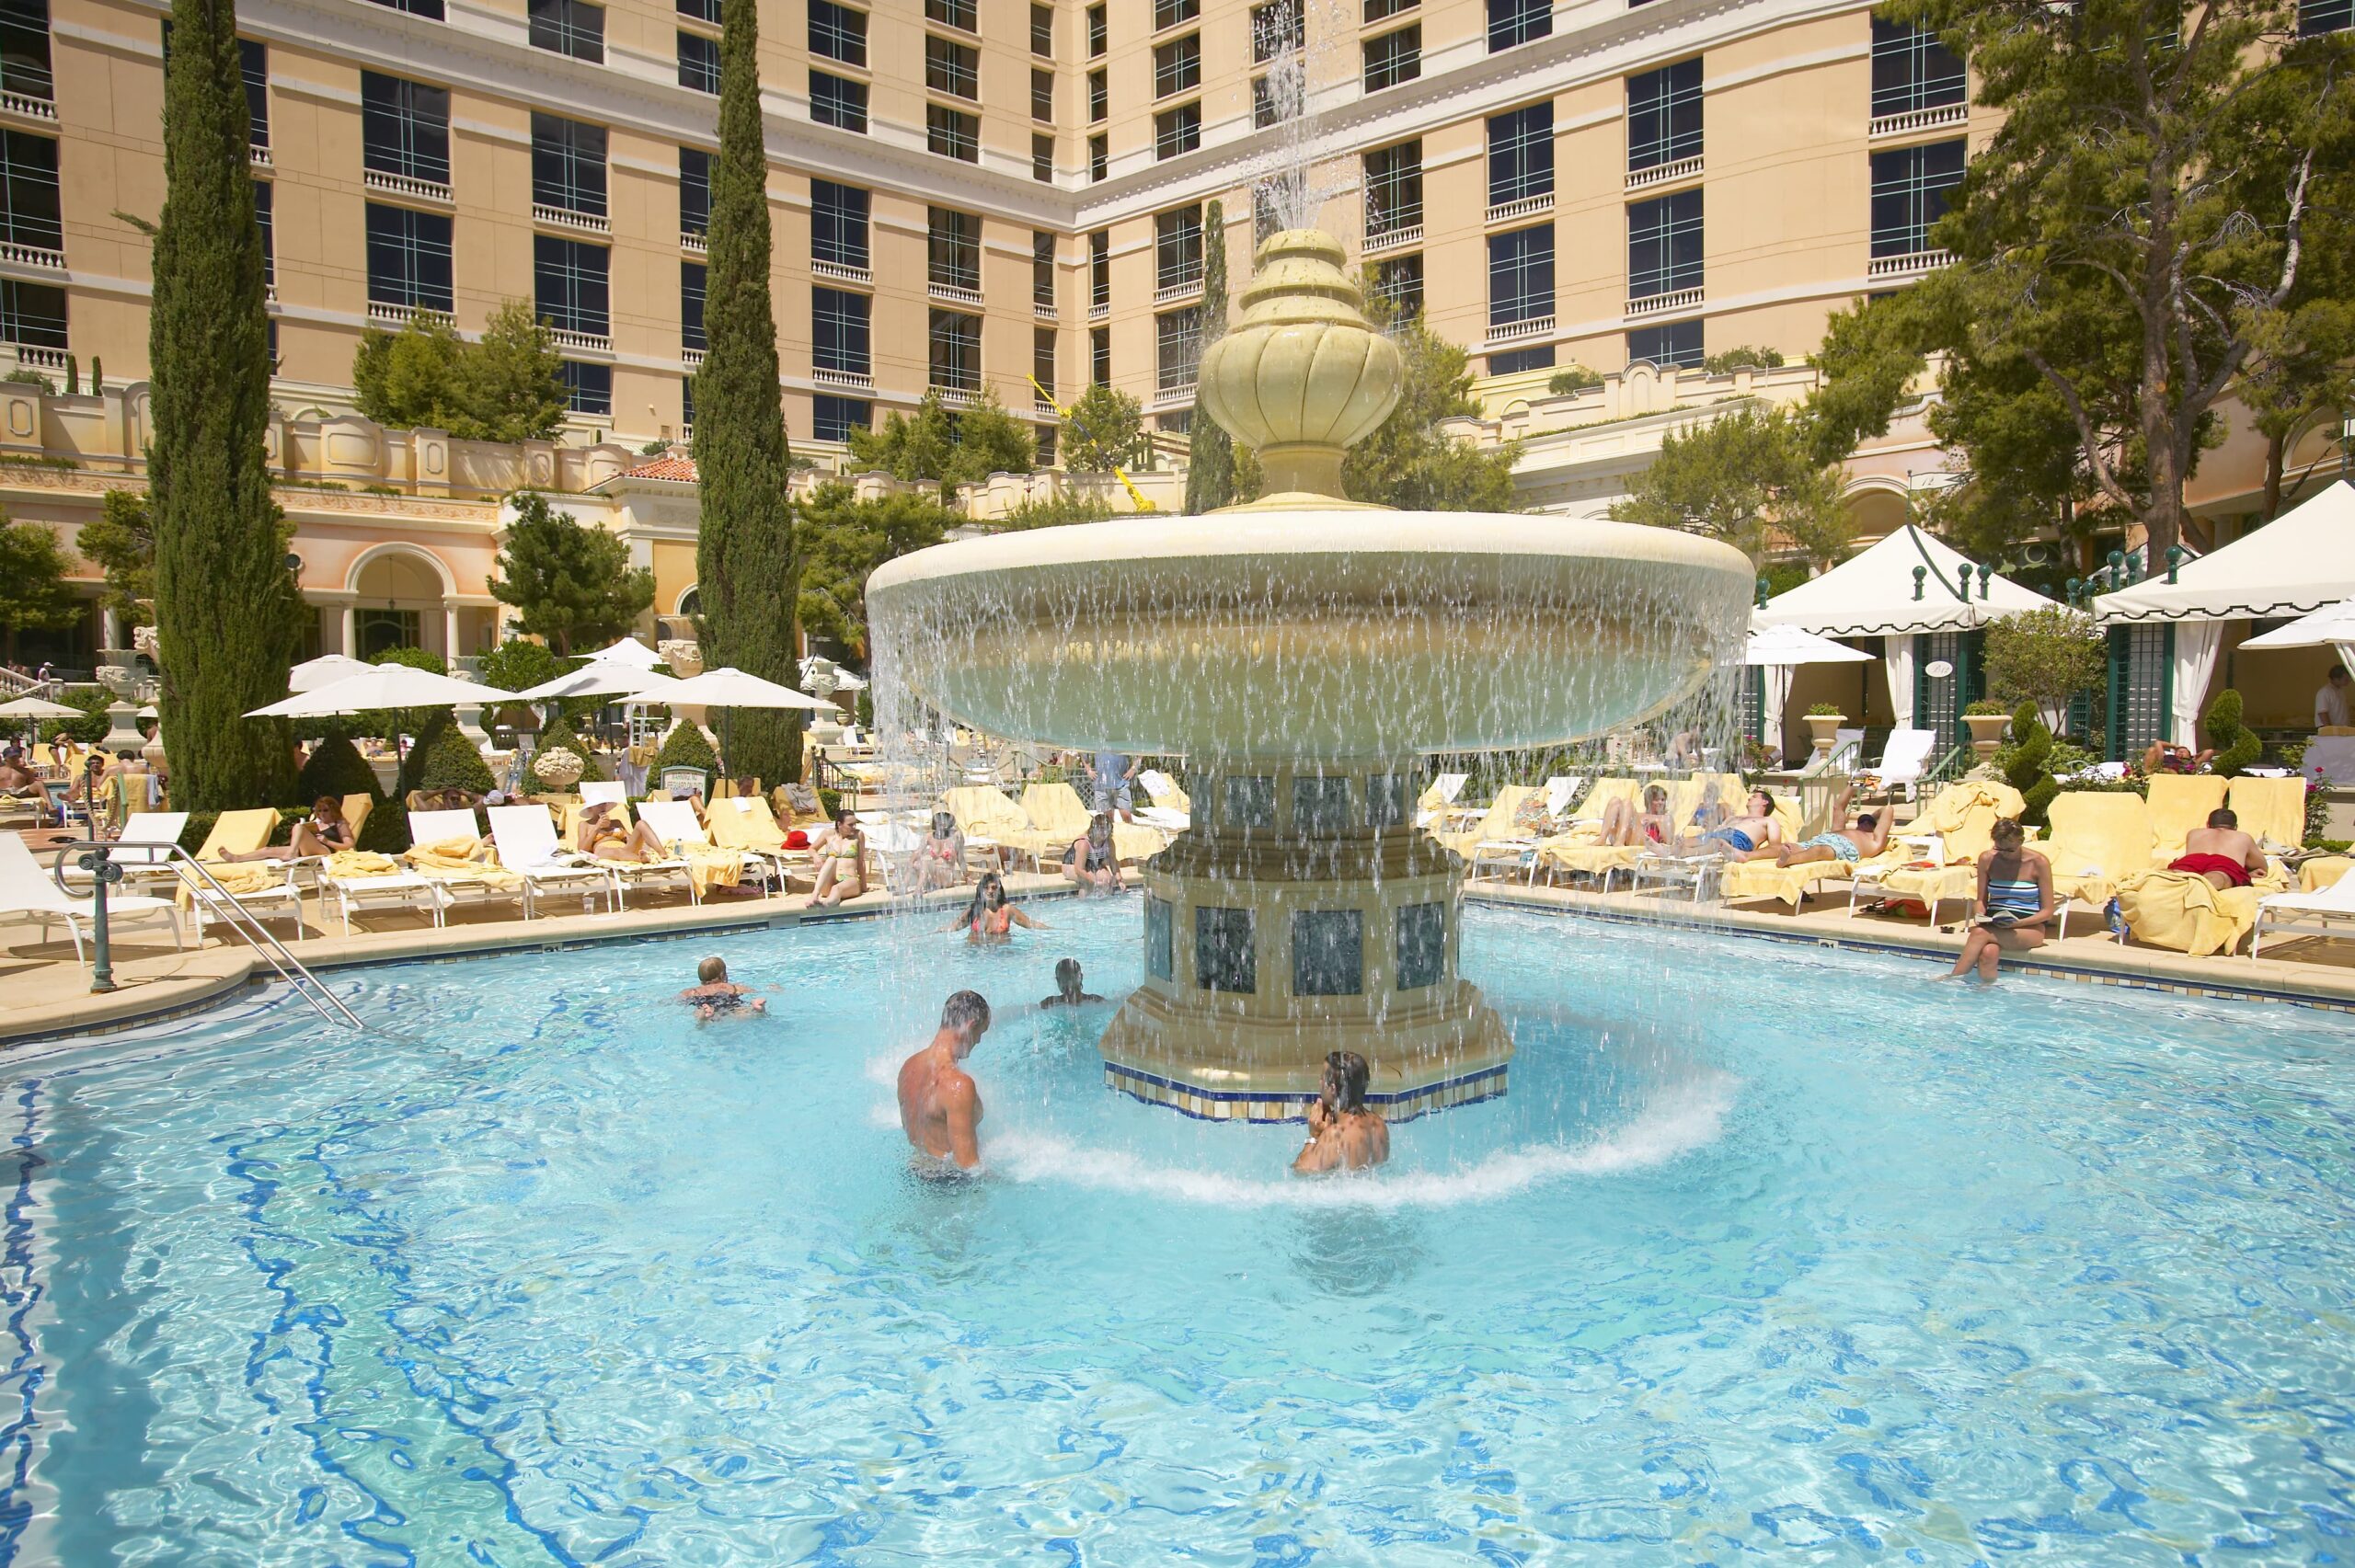 Bellagio Pool at Las Vegas